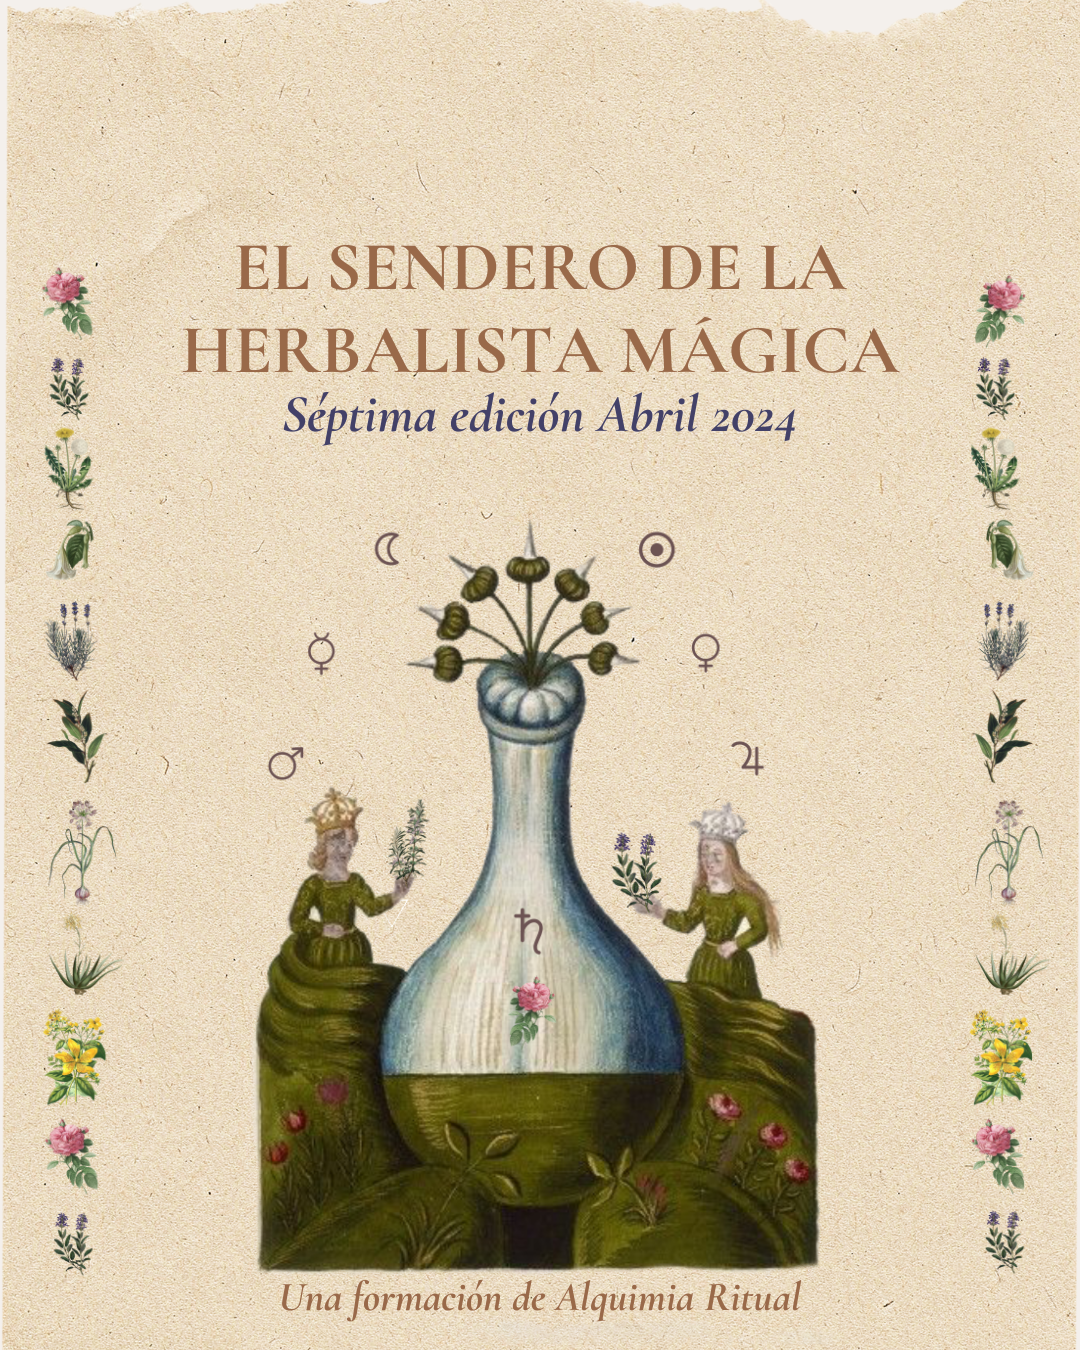 El sendero de la Herbalista Magica